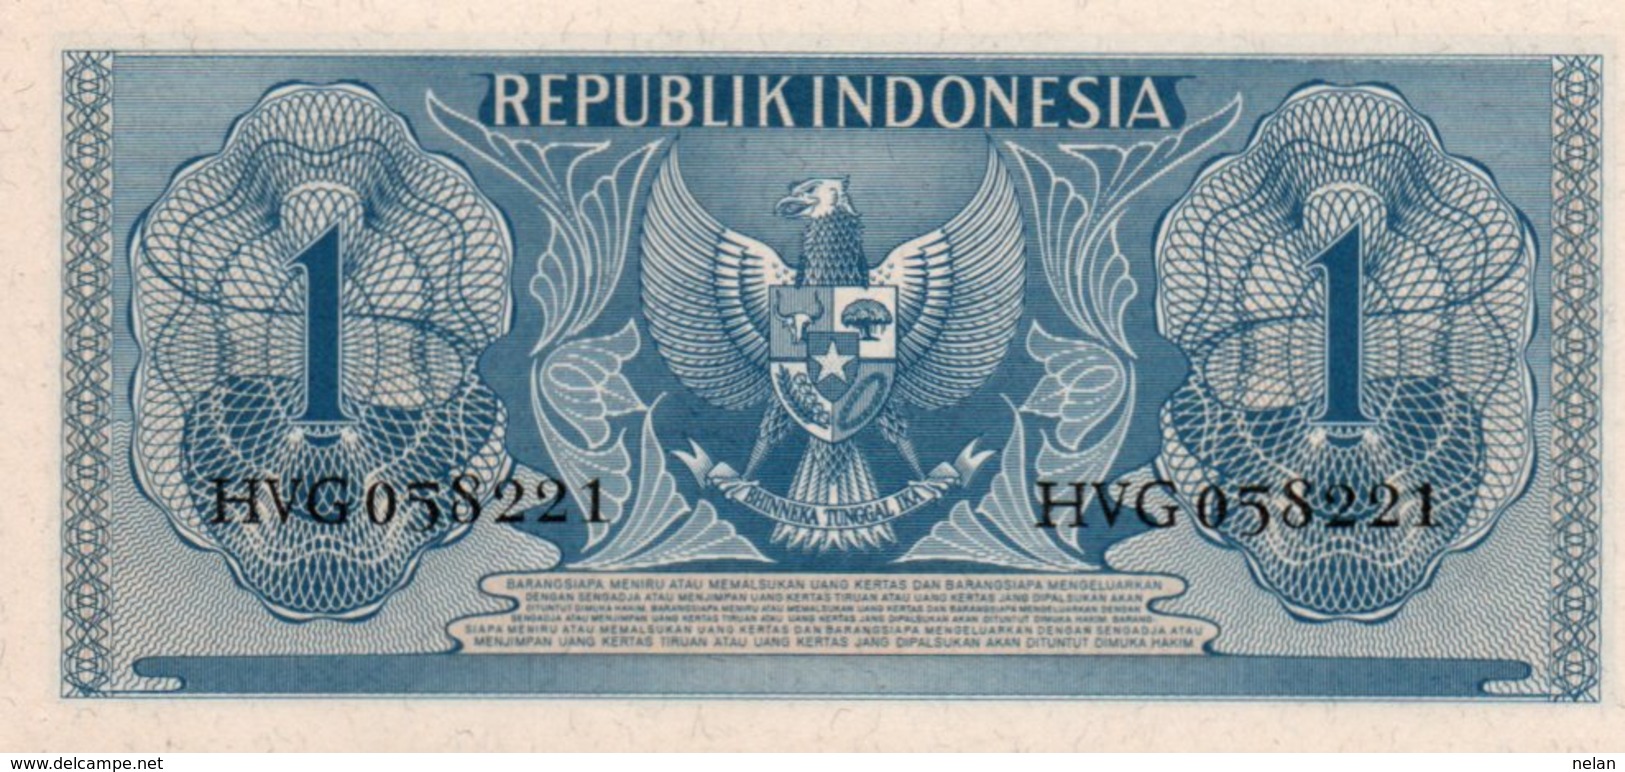 INDONESIA 1 RUPIAH  1956 P-74 UNC - Indonesië